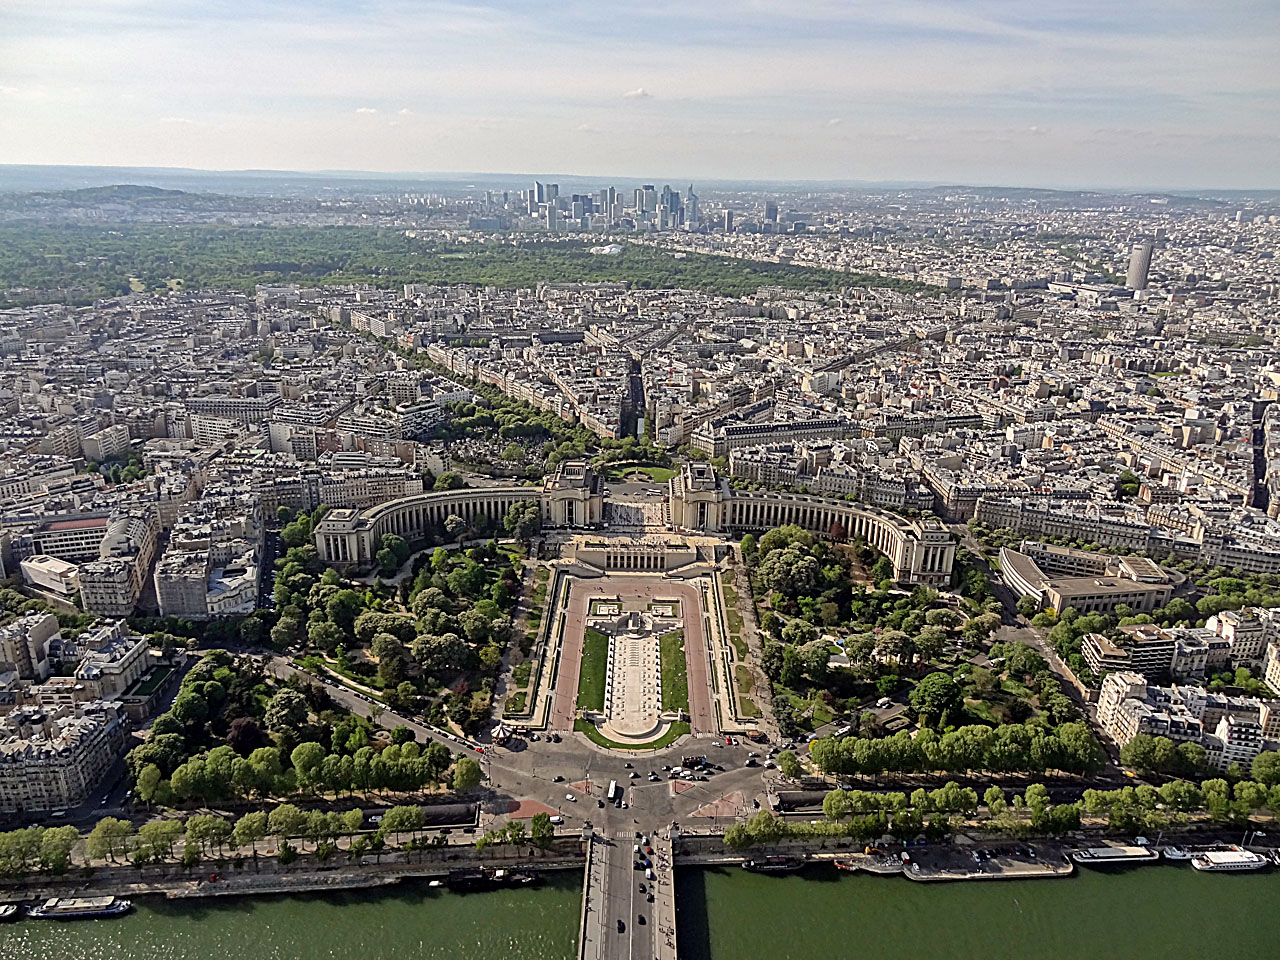 Vue du Trocadéro, du bois de Boulogne et de la Défense depuis le 3e étage de la tour Eiffel